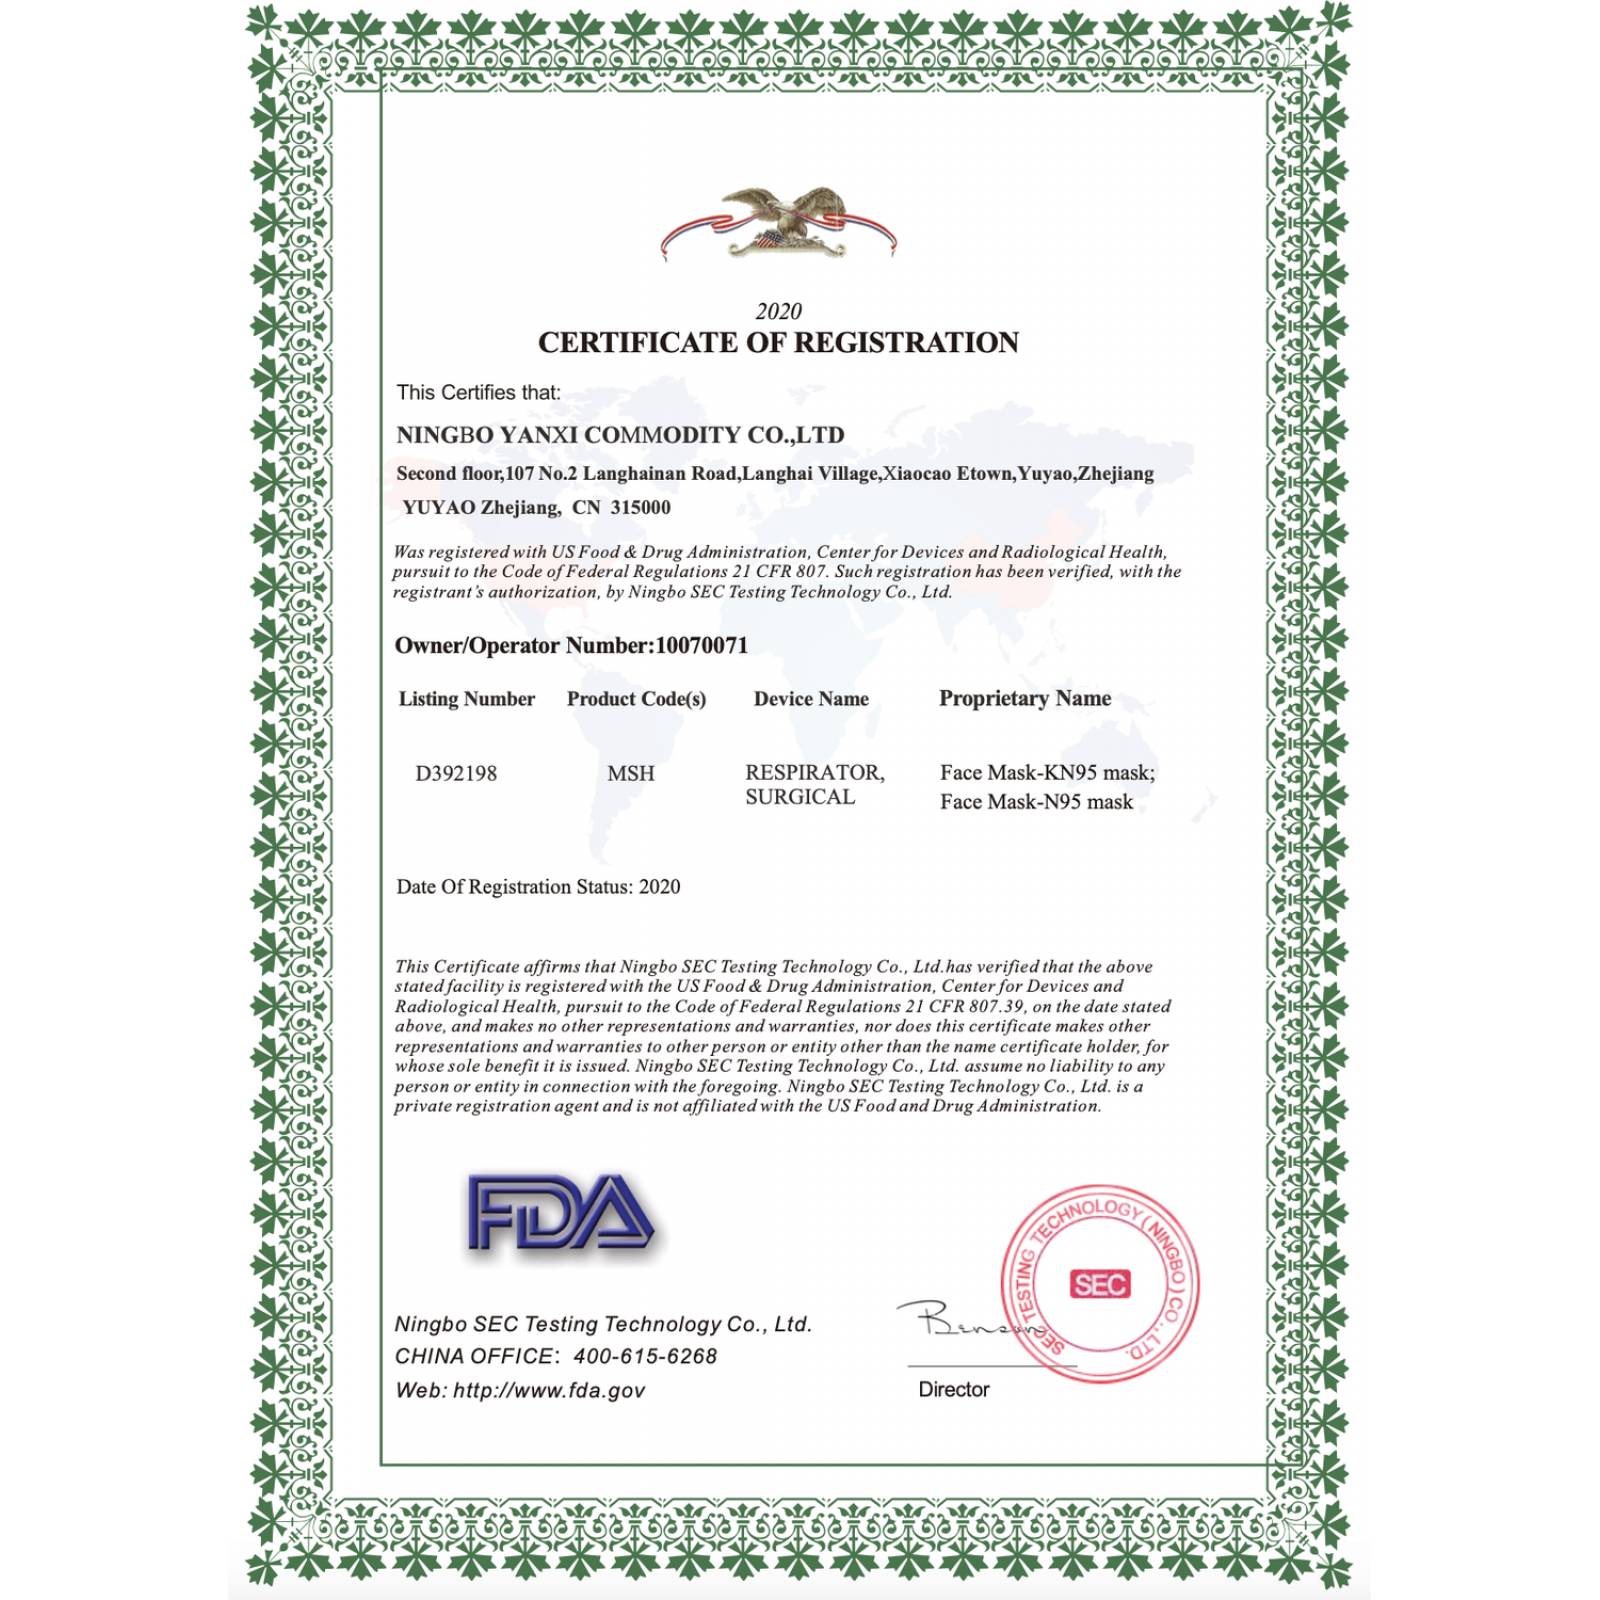 Cubrebocas KN95 Válvula Filtro 5 Capas FDA CE Certificado - 1 pz 